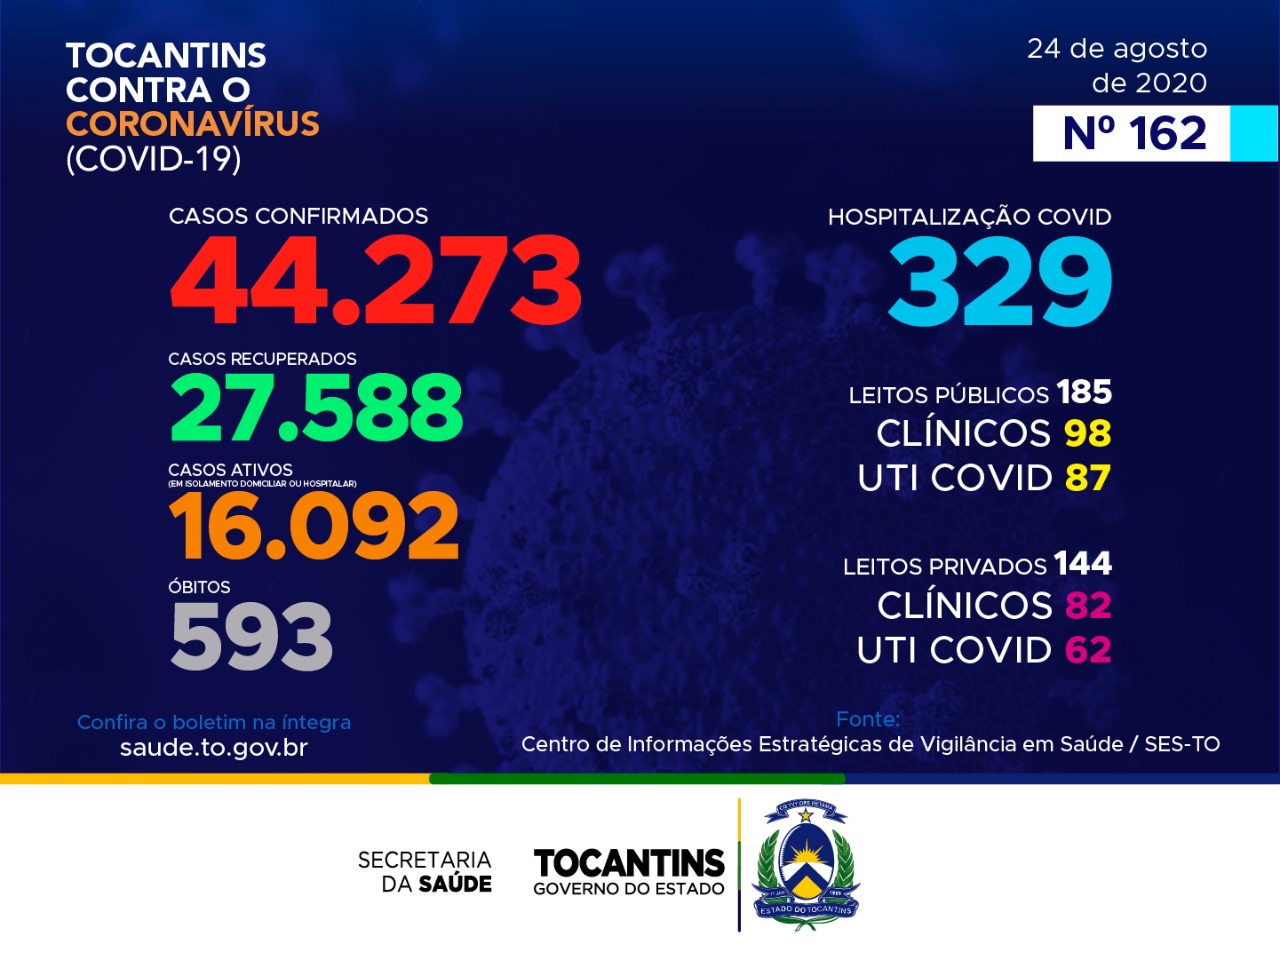 Coronavírus: Tocantins confirma mais 680 casos hoje, já se aproxima das 600 mortes